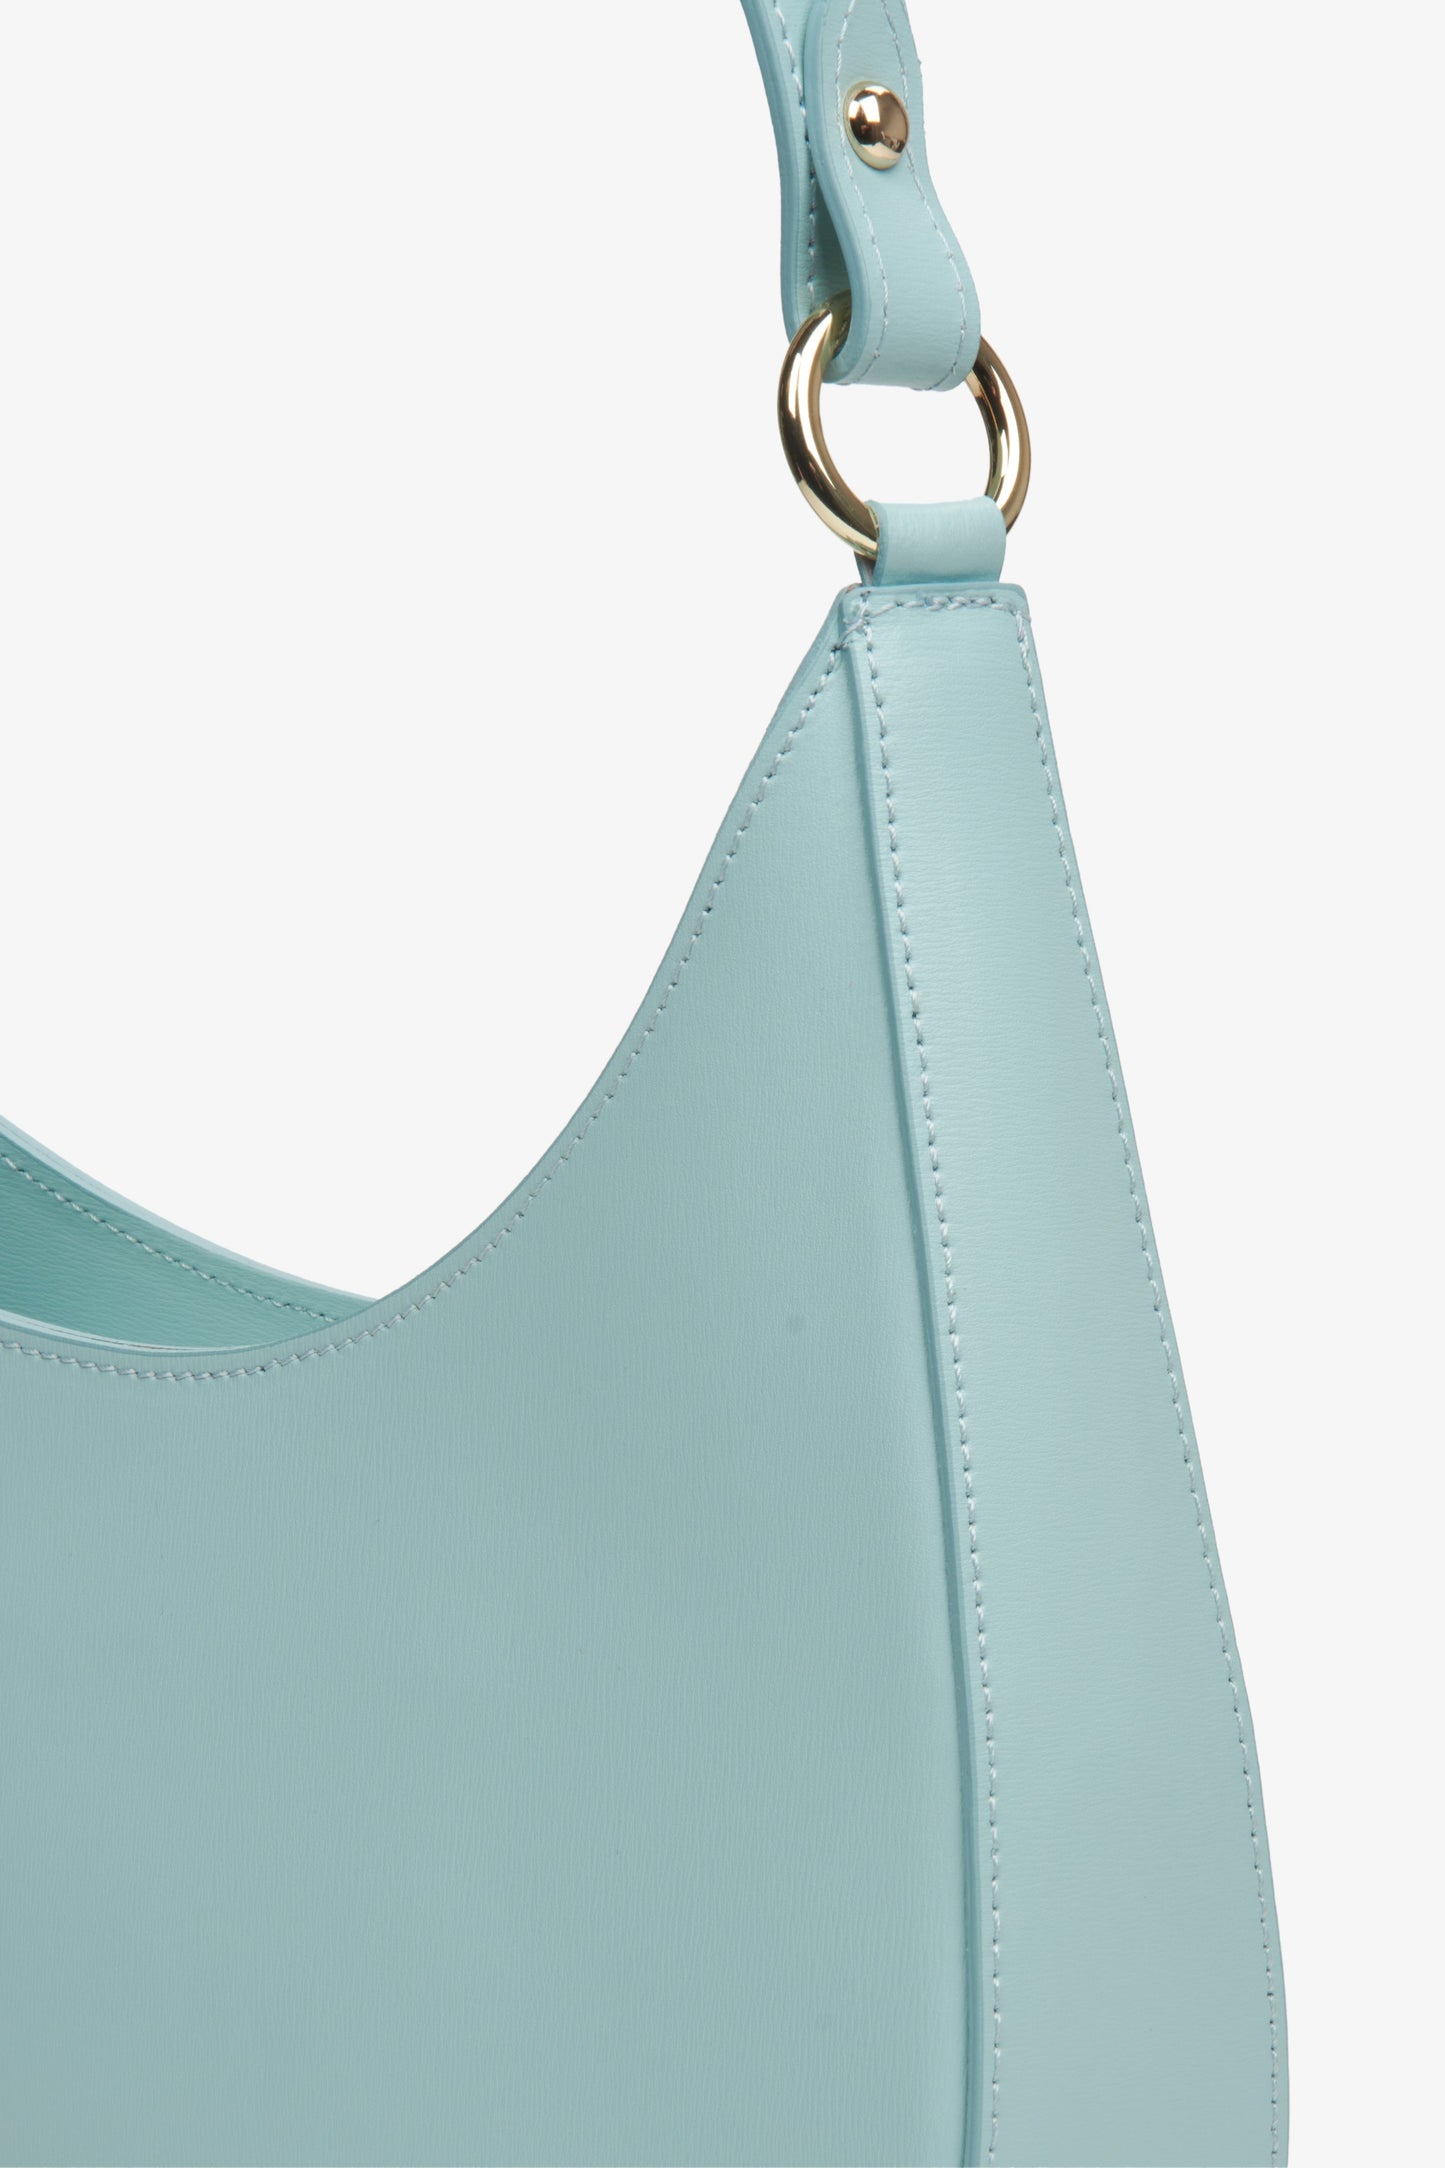 Torebka damska z włoskiej skóry naturalnej typu shoulder bag w kolorze niebieskim.